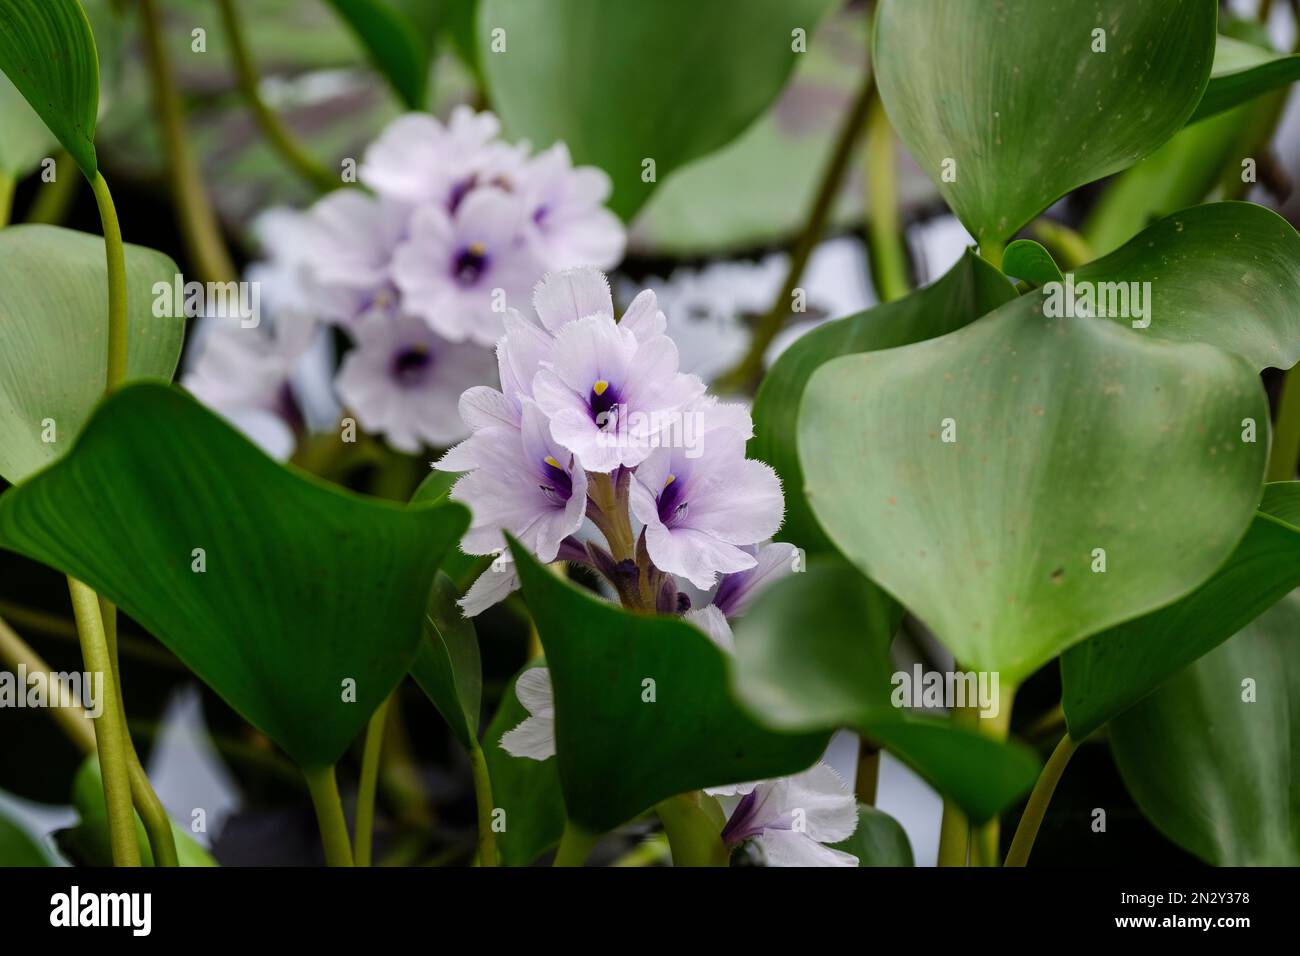 Eichhornia azurea, jacinto de agua anclada, flotante o sumergida, perenne acuática, flores de color azul pálido con gargantas de color amarillo y púrpura oscuro Foto de stock